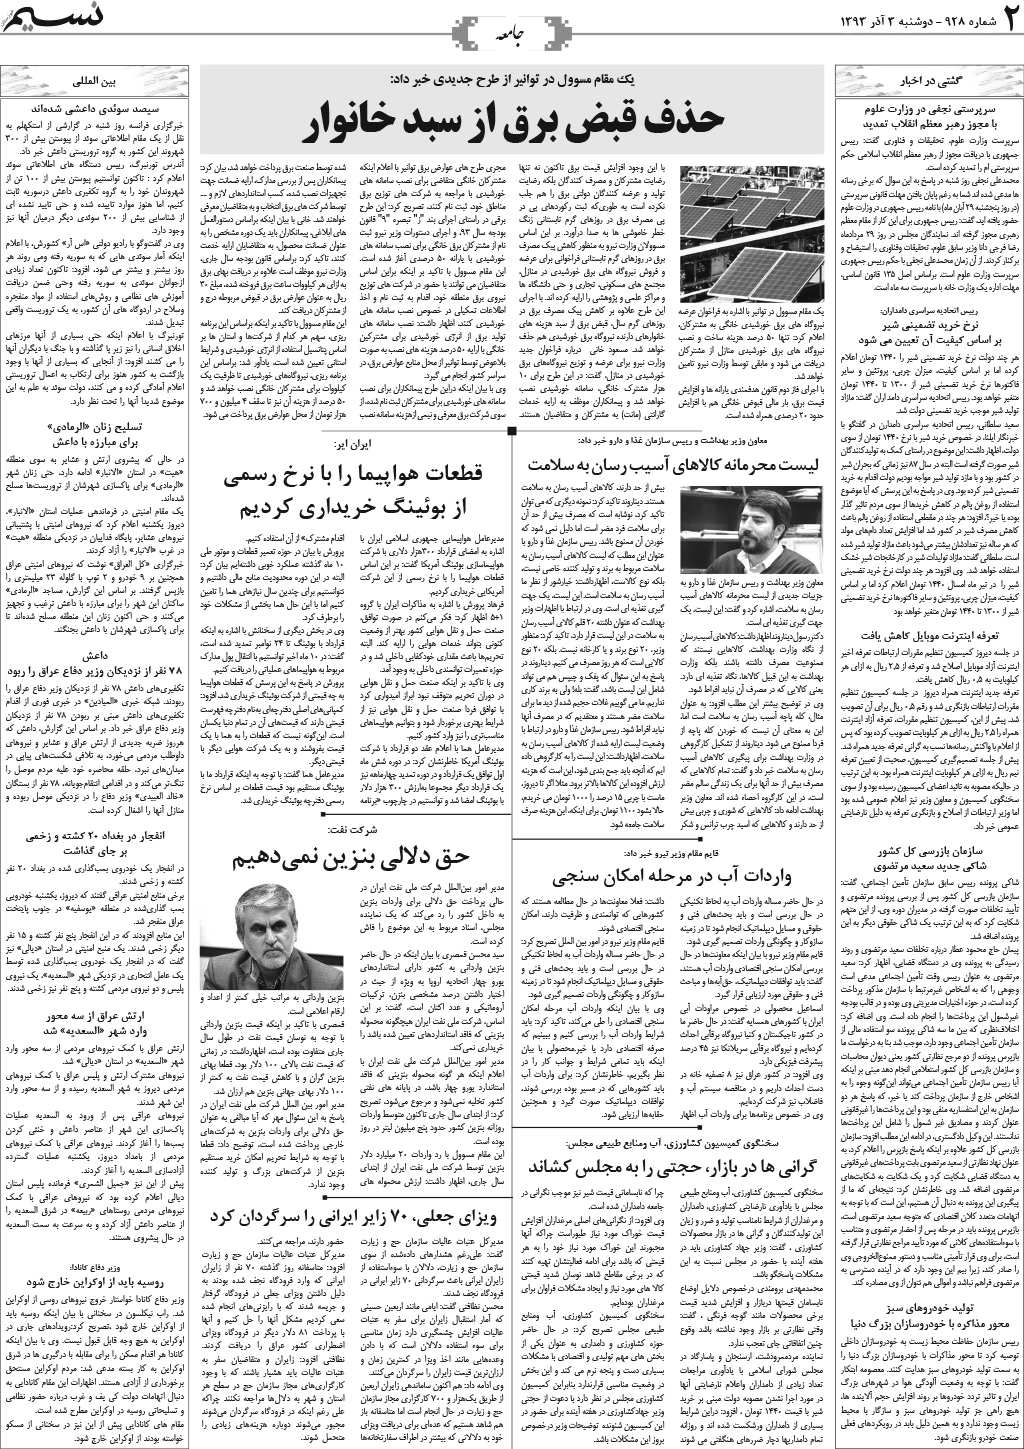 صفحه جامعه روزنامه نسیم شماره 928